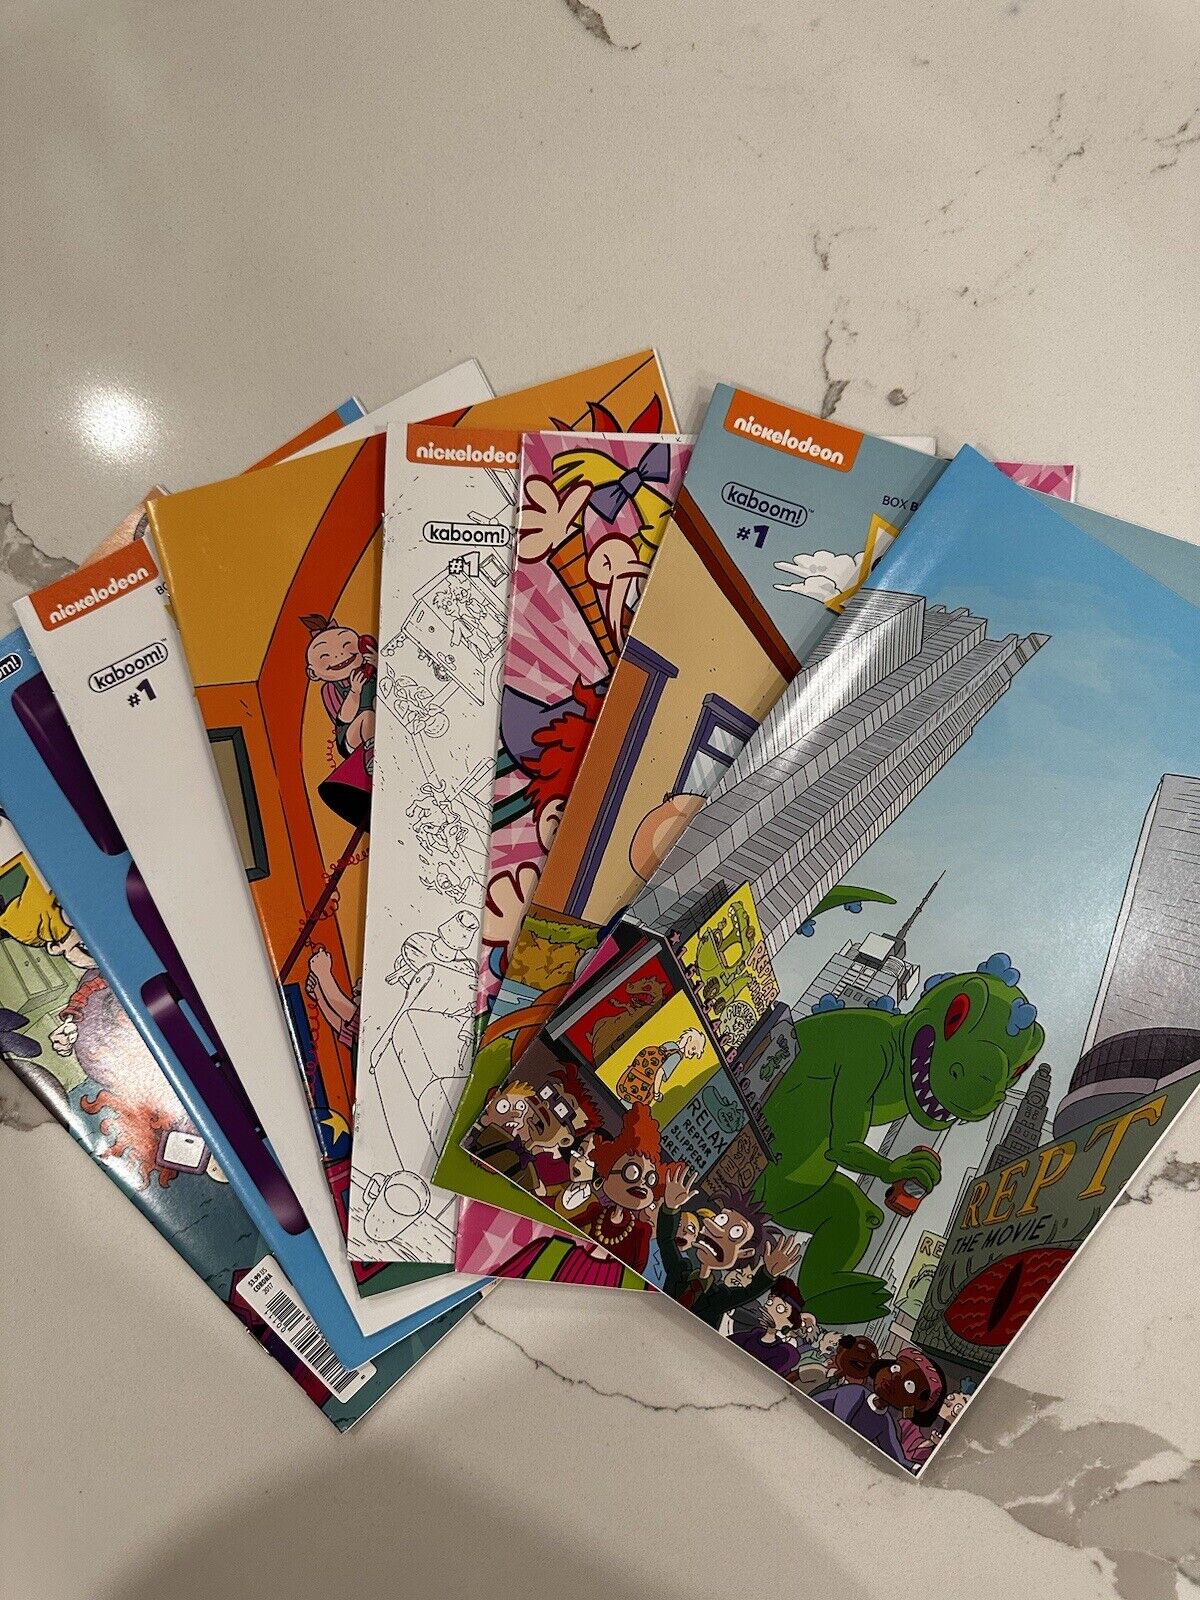 Rugrats #1 Variant Lot - NM/NM- Nickelodeon Comics 8 Books Total. (Rare)